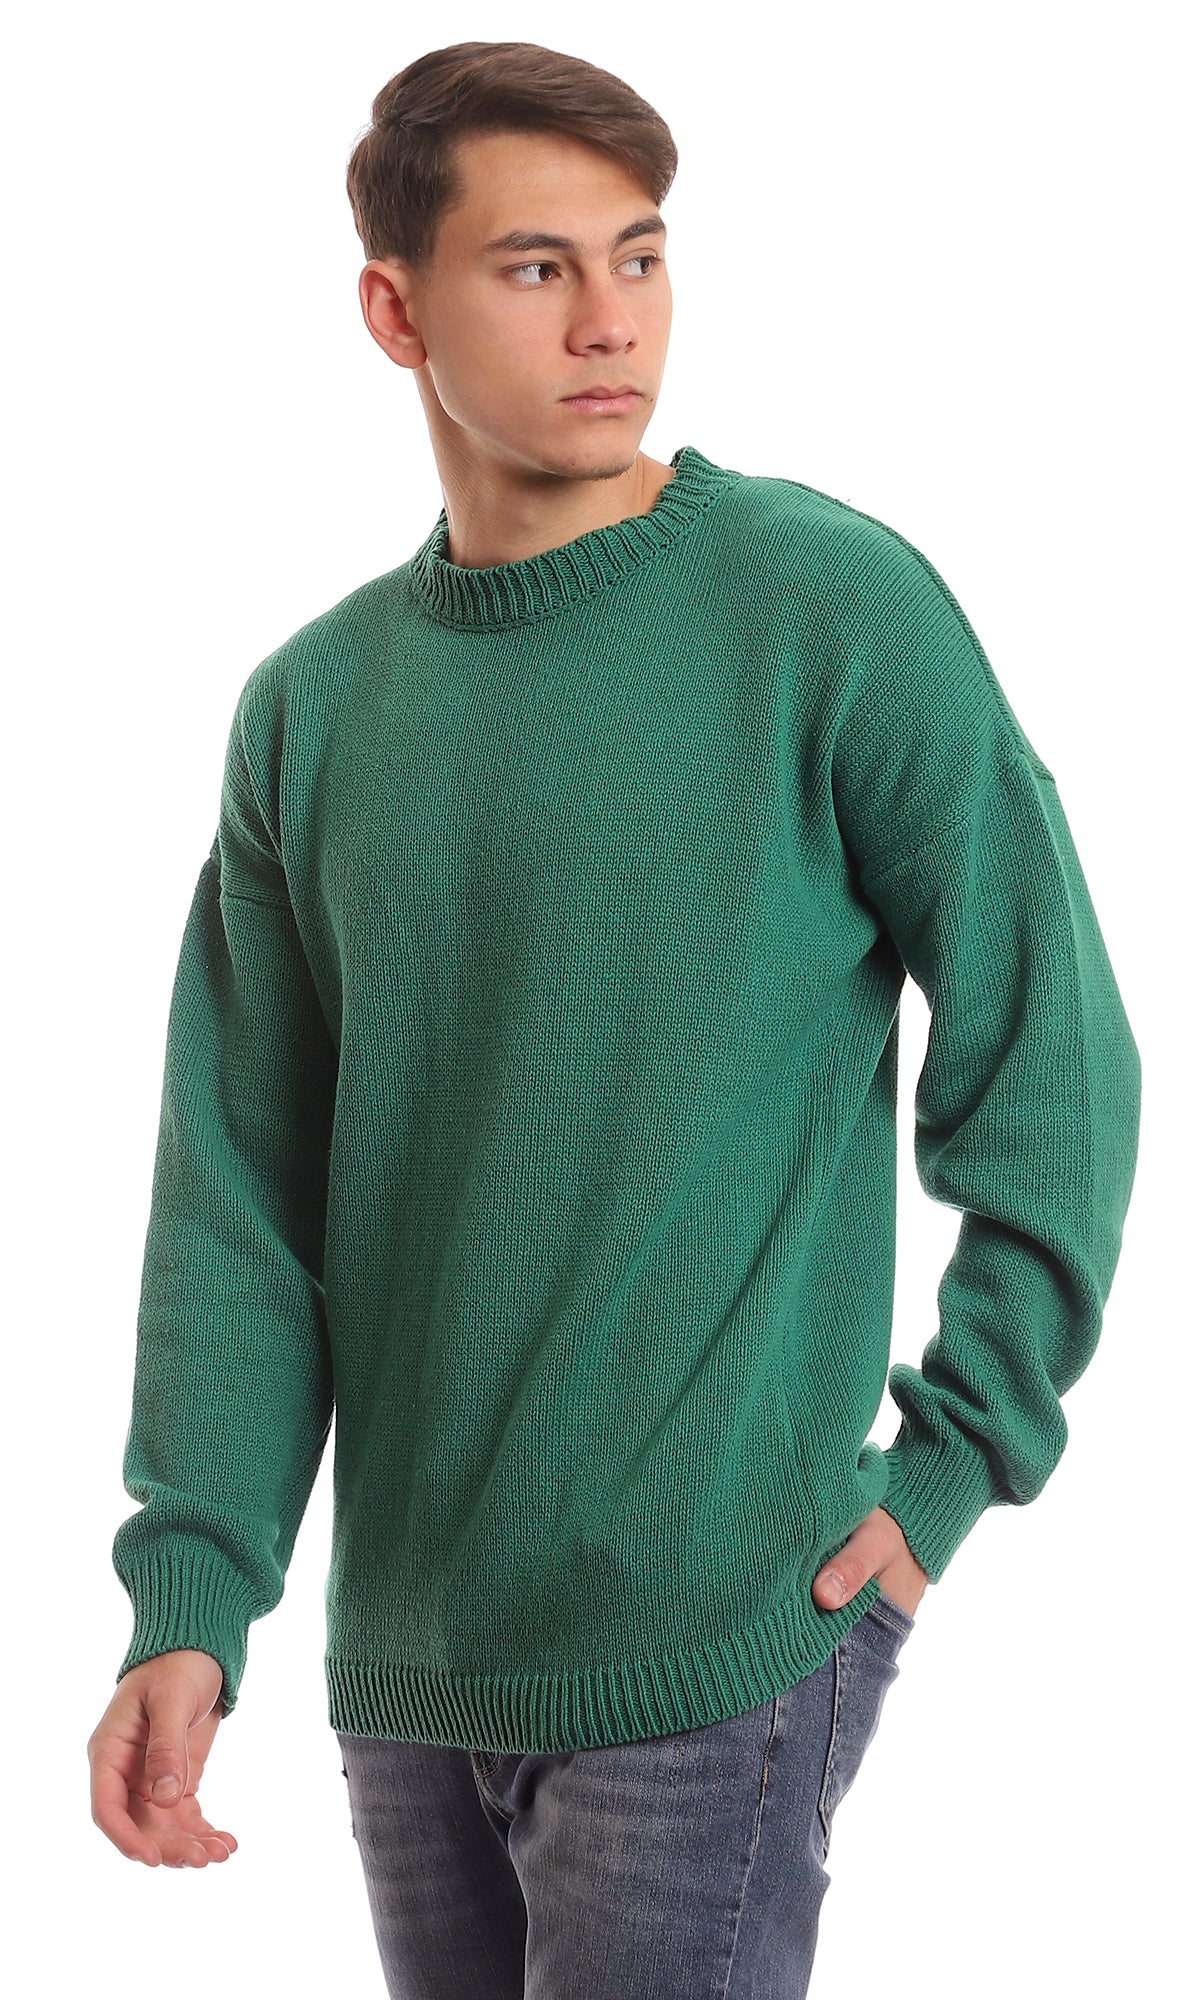 98067 Medium Green Slip On Knitted Pullover